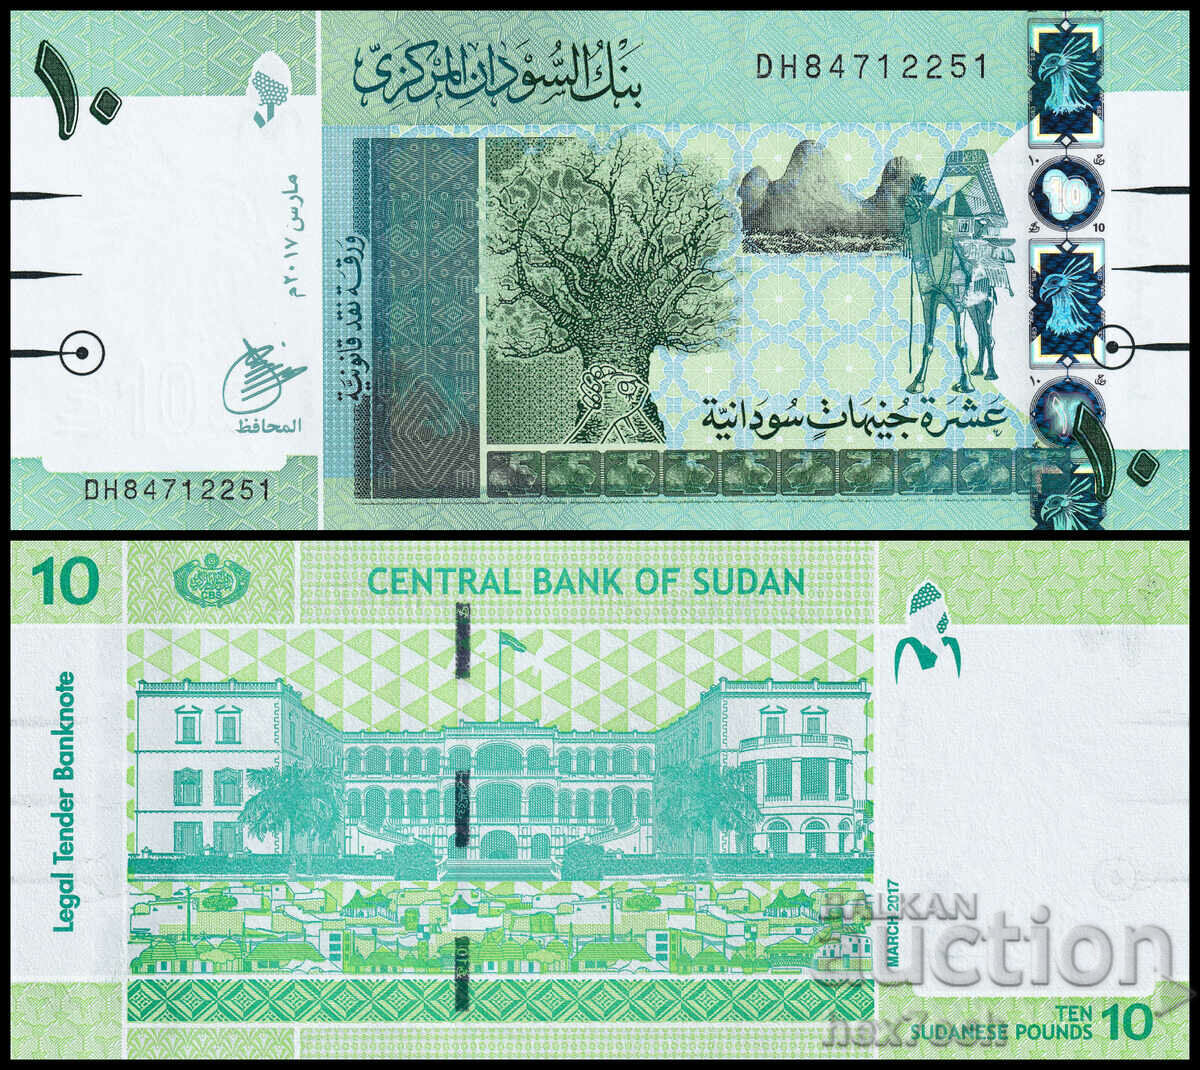 ❤️ ⭐ Sudan 2017 10 pound UNC new ⭐ ❤️